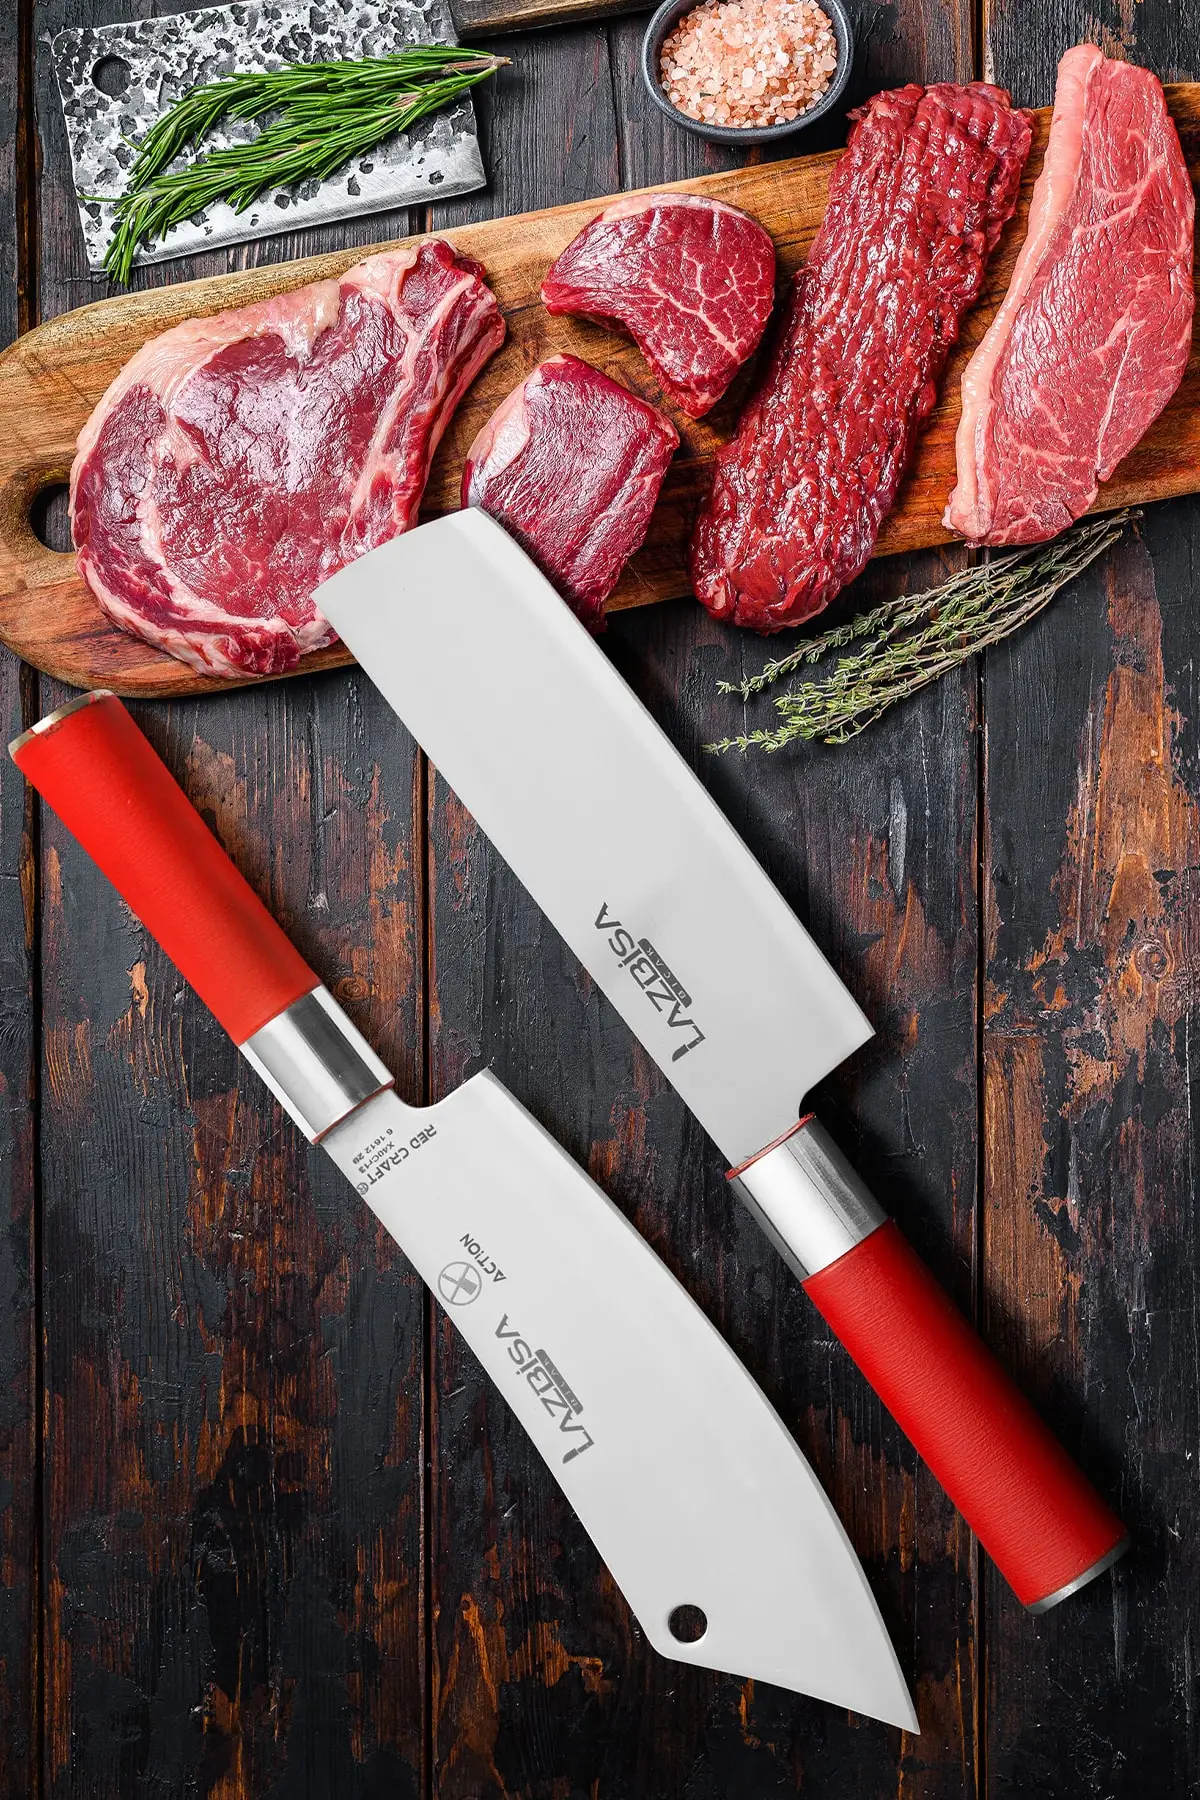 

Набор кухонных ножей, нож шеф-повара для мяса, костей, овощей, хлеба, фруктов, серия Red Craft (Action-Nakiri)